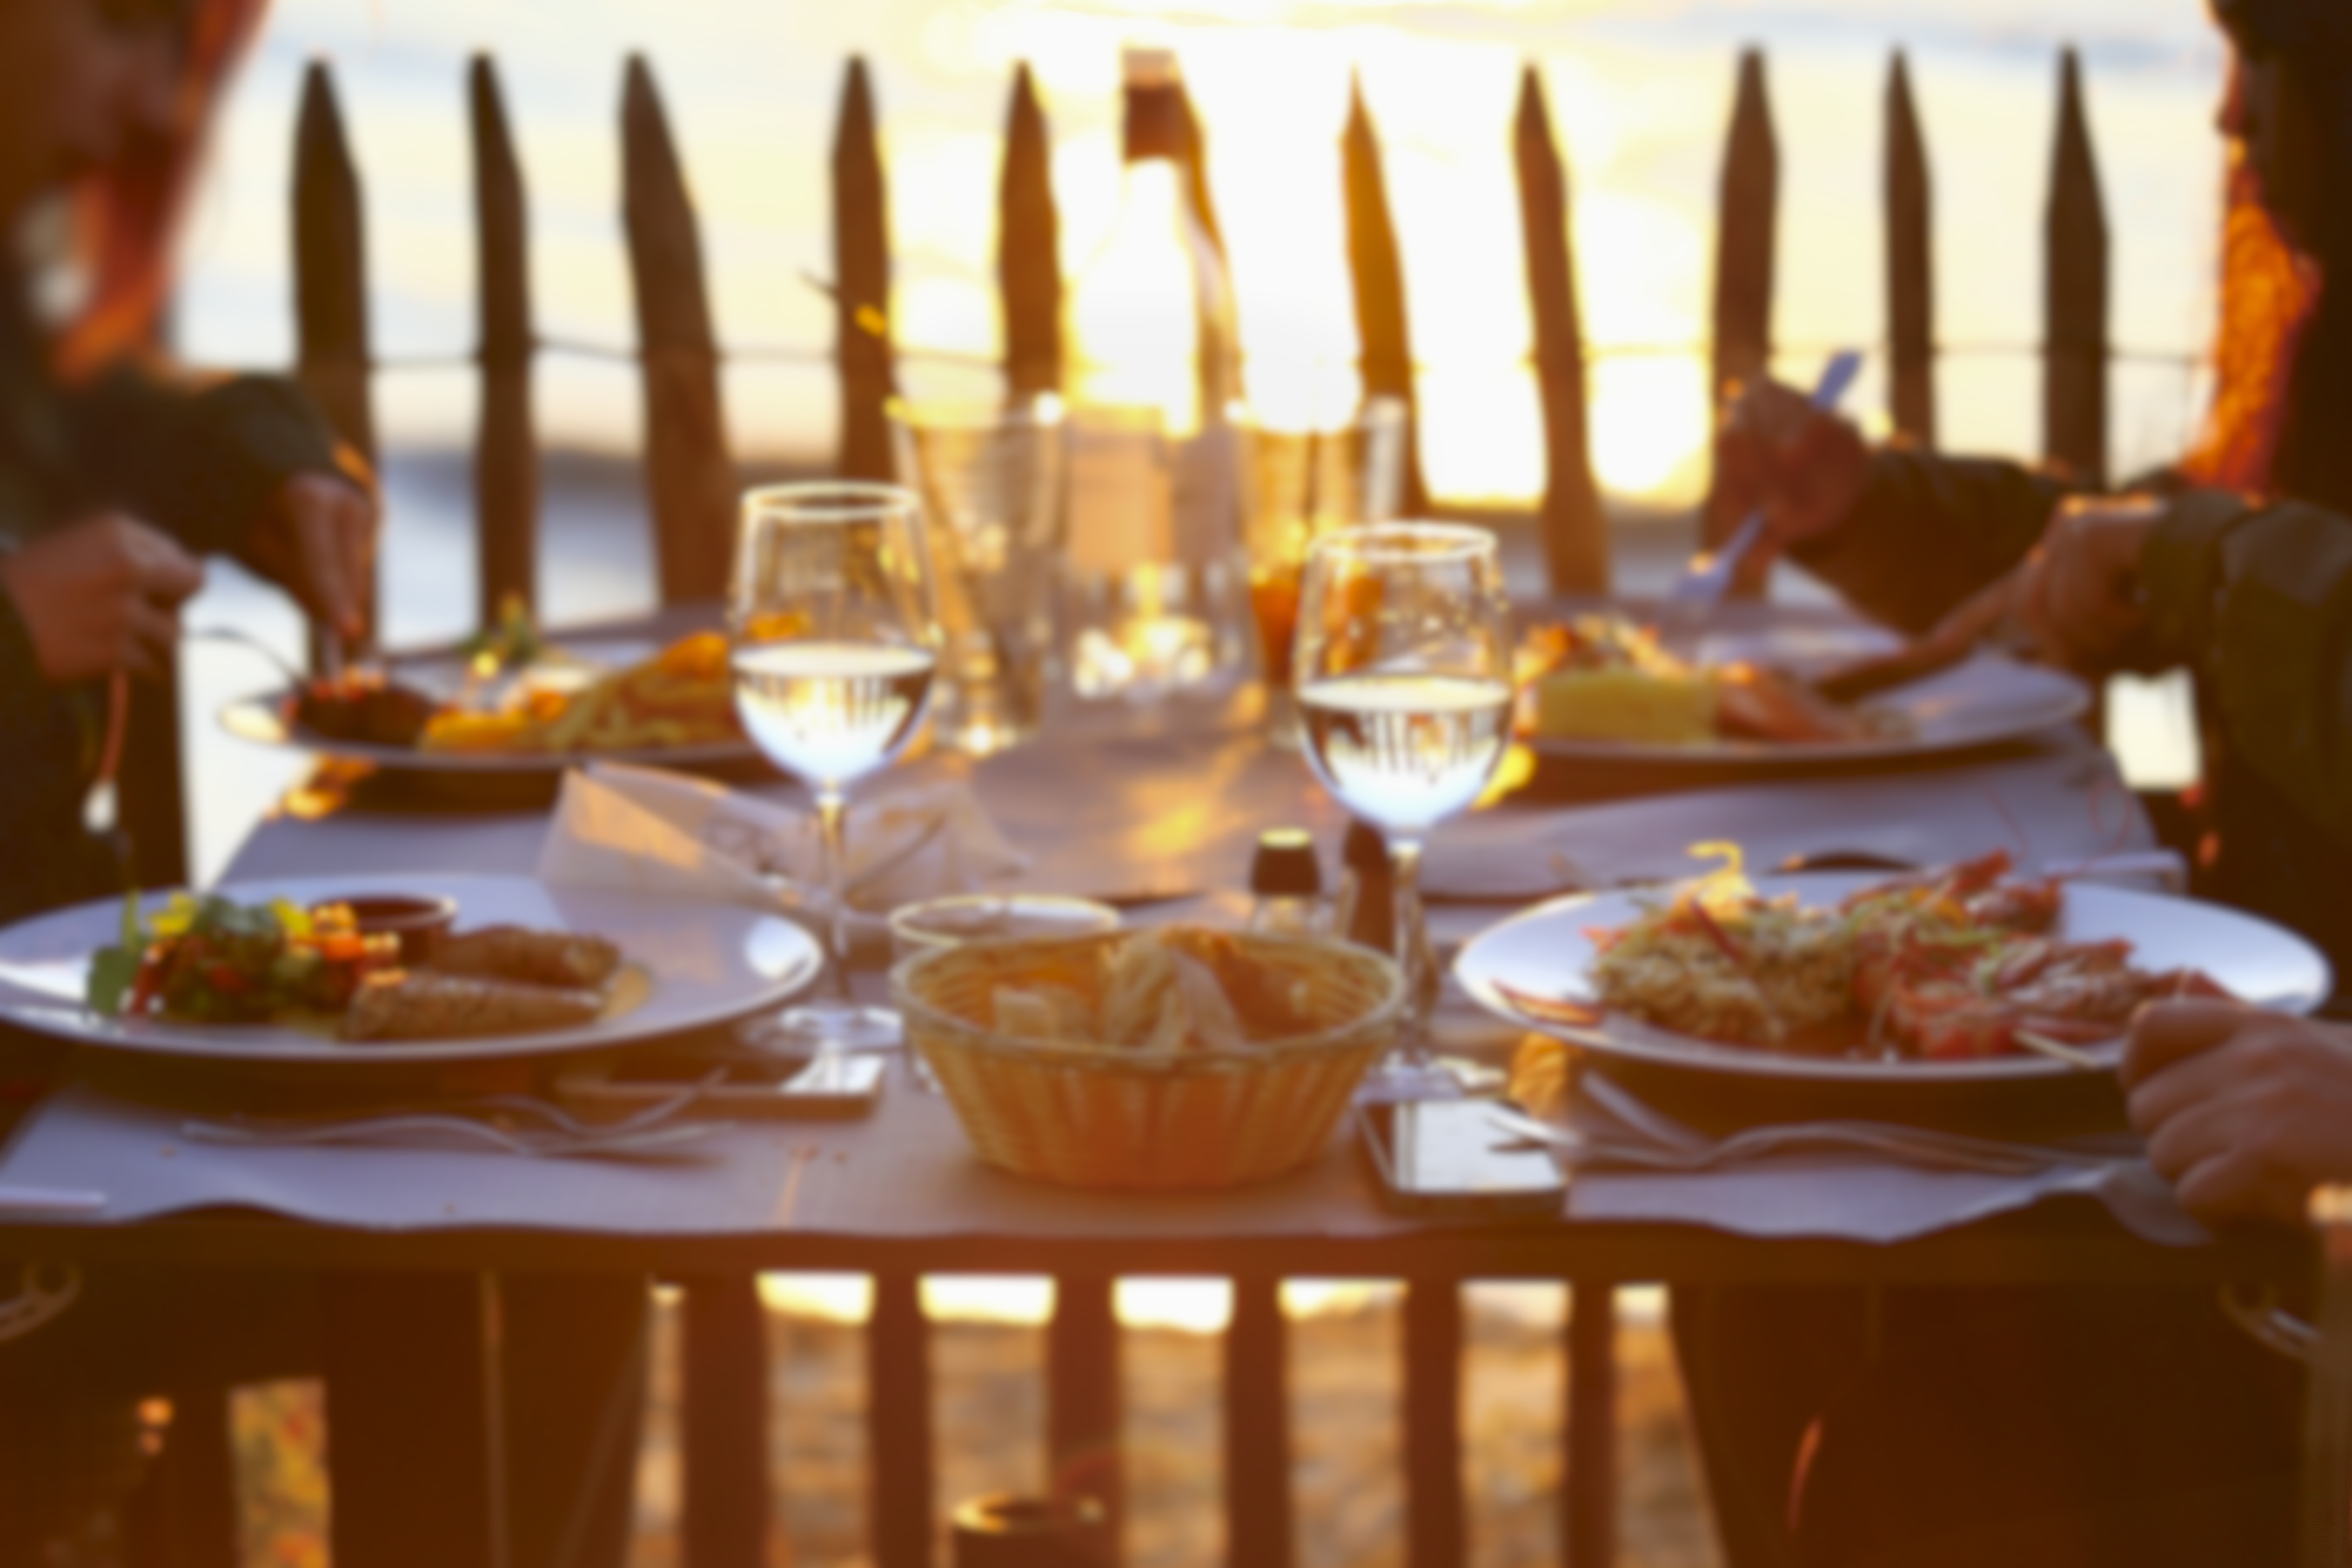 People enjoying a sunset dinner | Source: Shutterstock